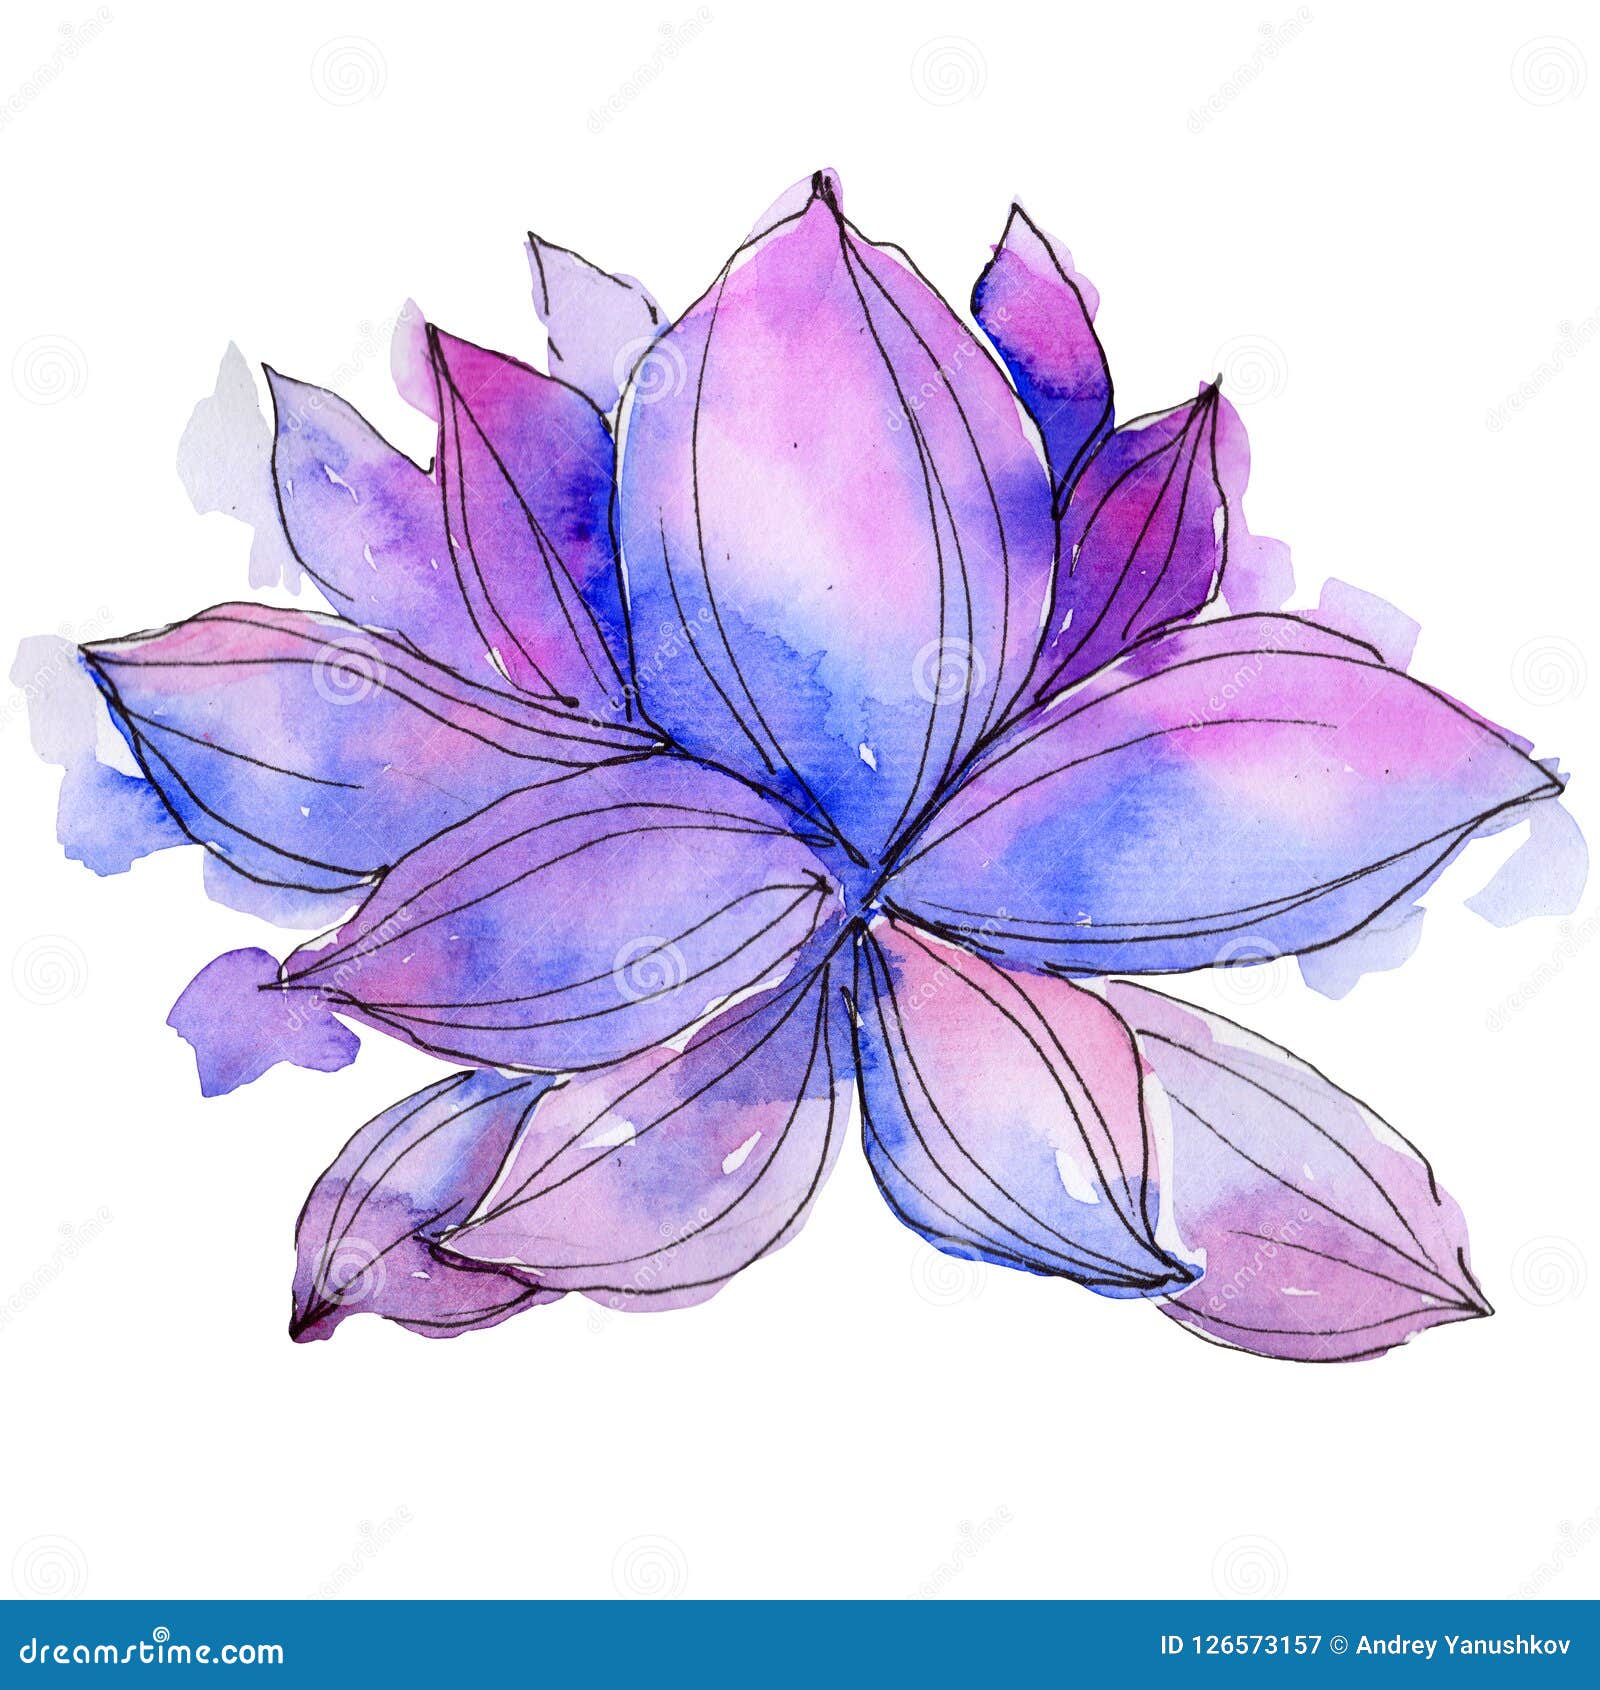 Hoa sen tím nước sơn mài là một tác phẩm tuyệt đẹp với sự kết hợp tinh tế giữa nét vẽ và màu sắc. Thưởng thức những bức ảnh hoặc bức tranh của hoa sen tím được vẽ nước sơn mài để đắm chìm trong thế giới của nó.